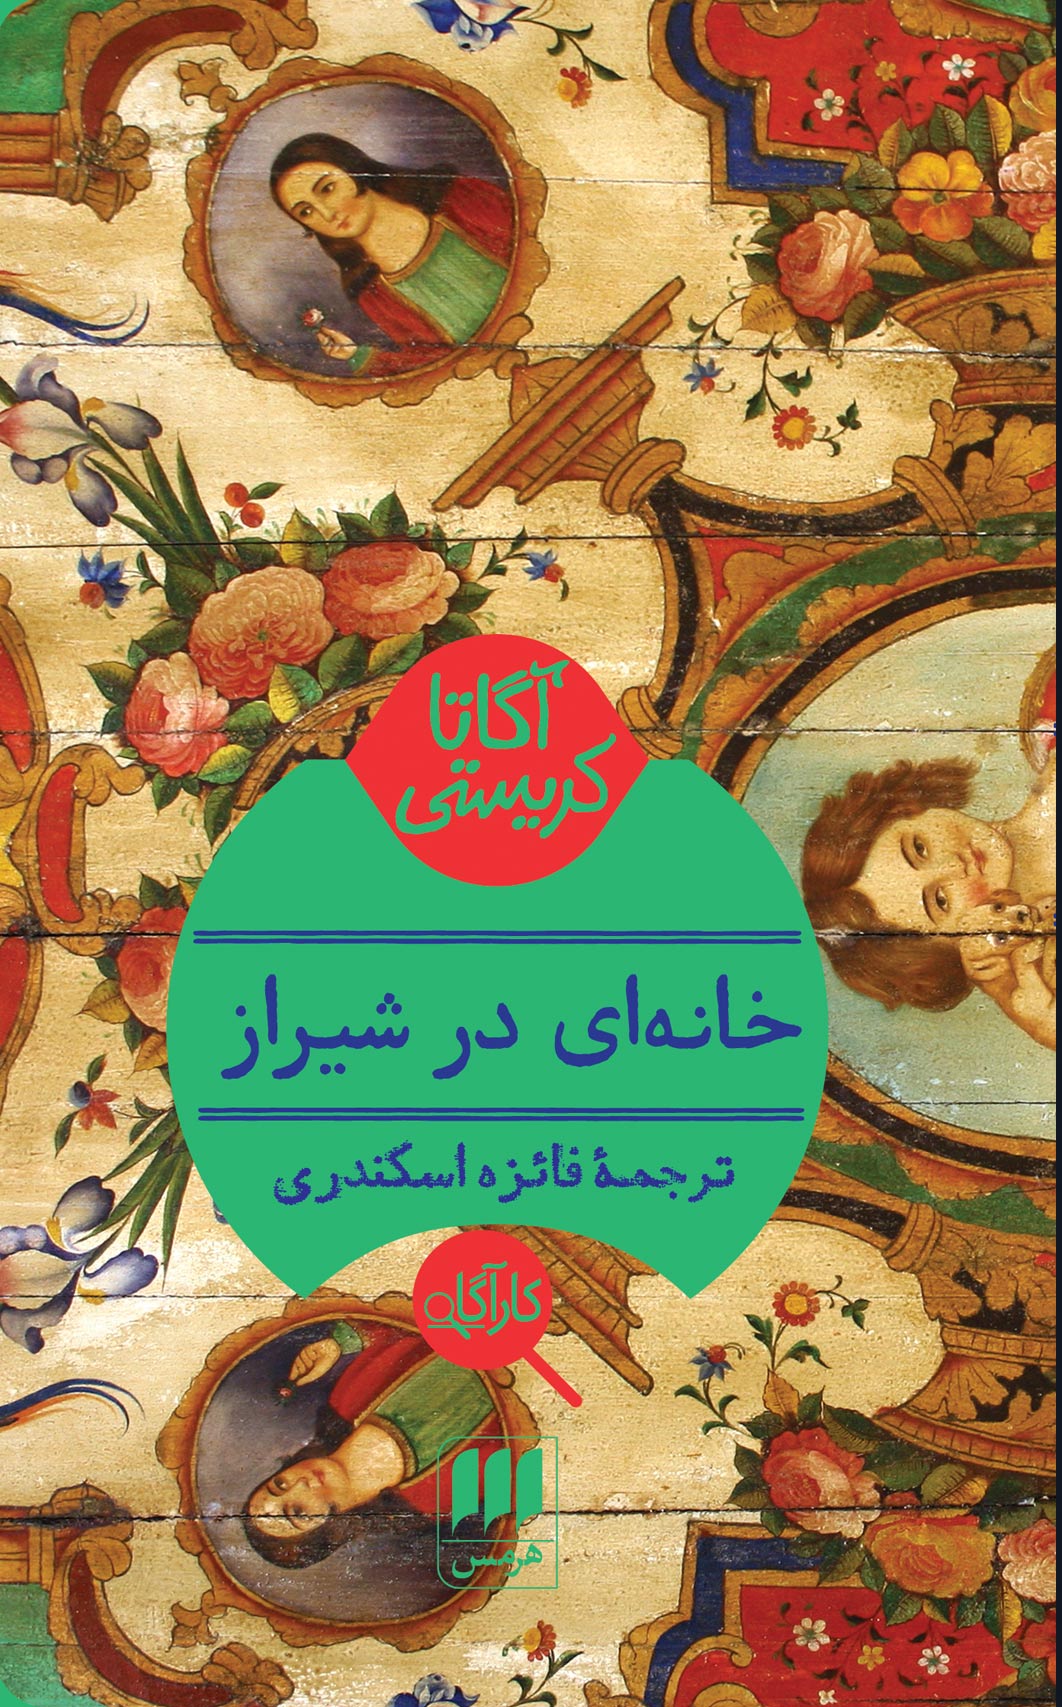 کتاب خانه ای در شیراز